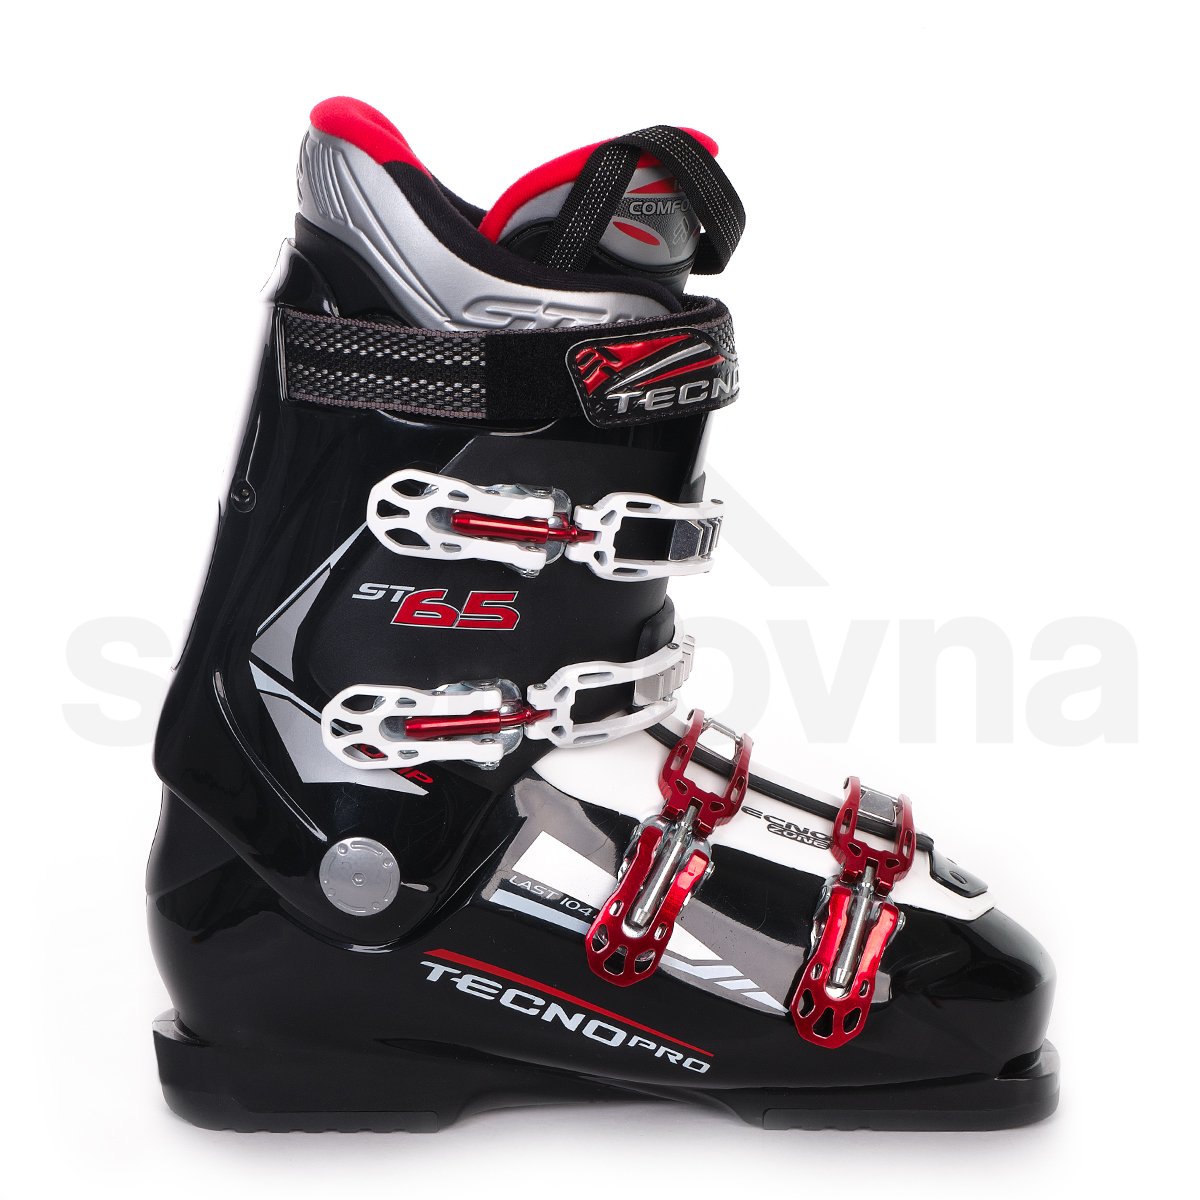 Lyžařské boty TecnoPro ST 65 - černá/bílá/červená